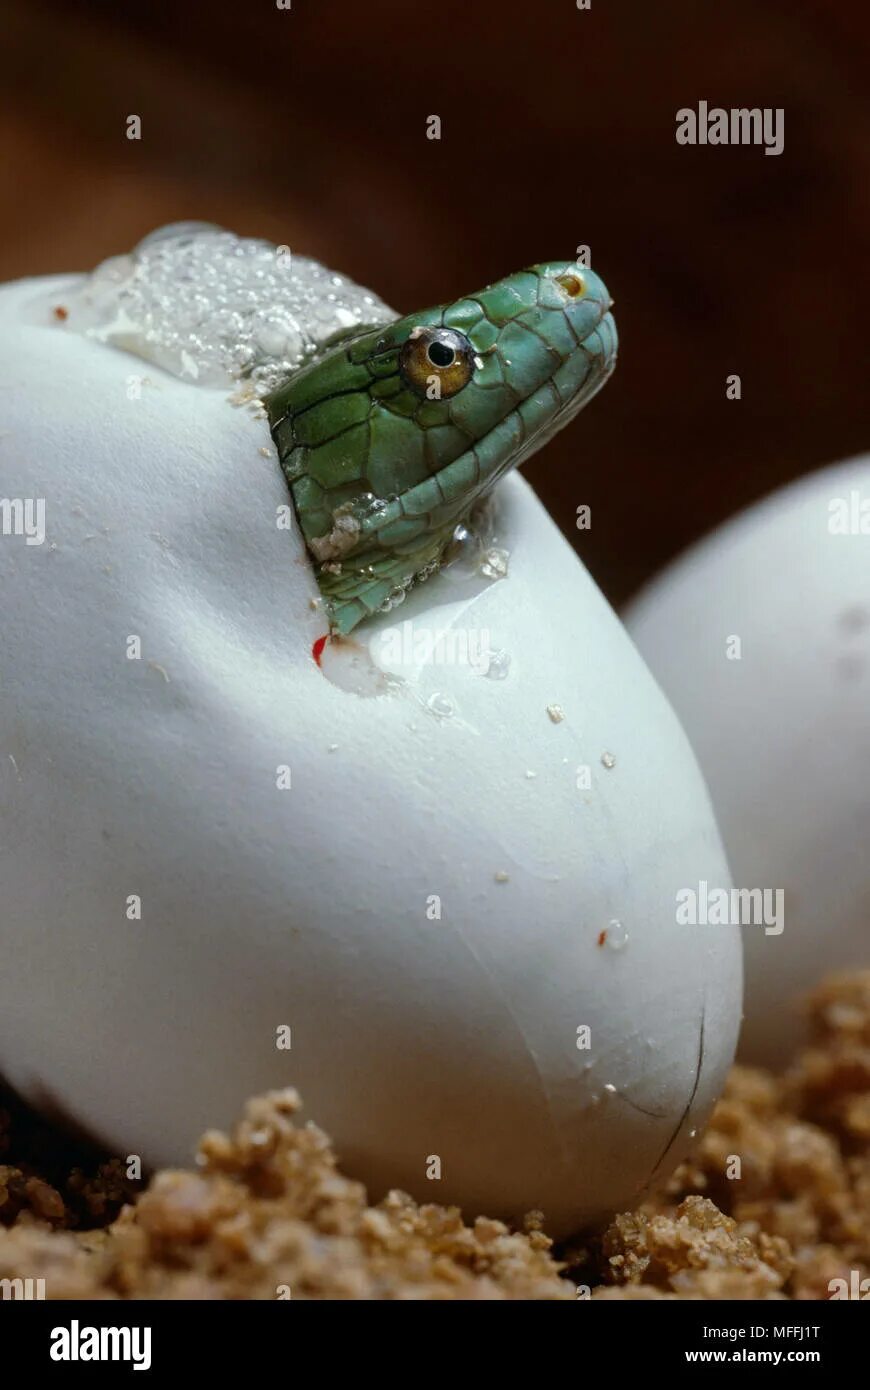 Видео яйца змеи. Змея мамба выводок яиц. Яйцеживорождение гадюка. Змея вылупляется из яйца.